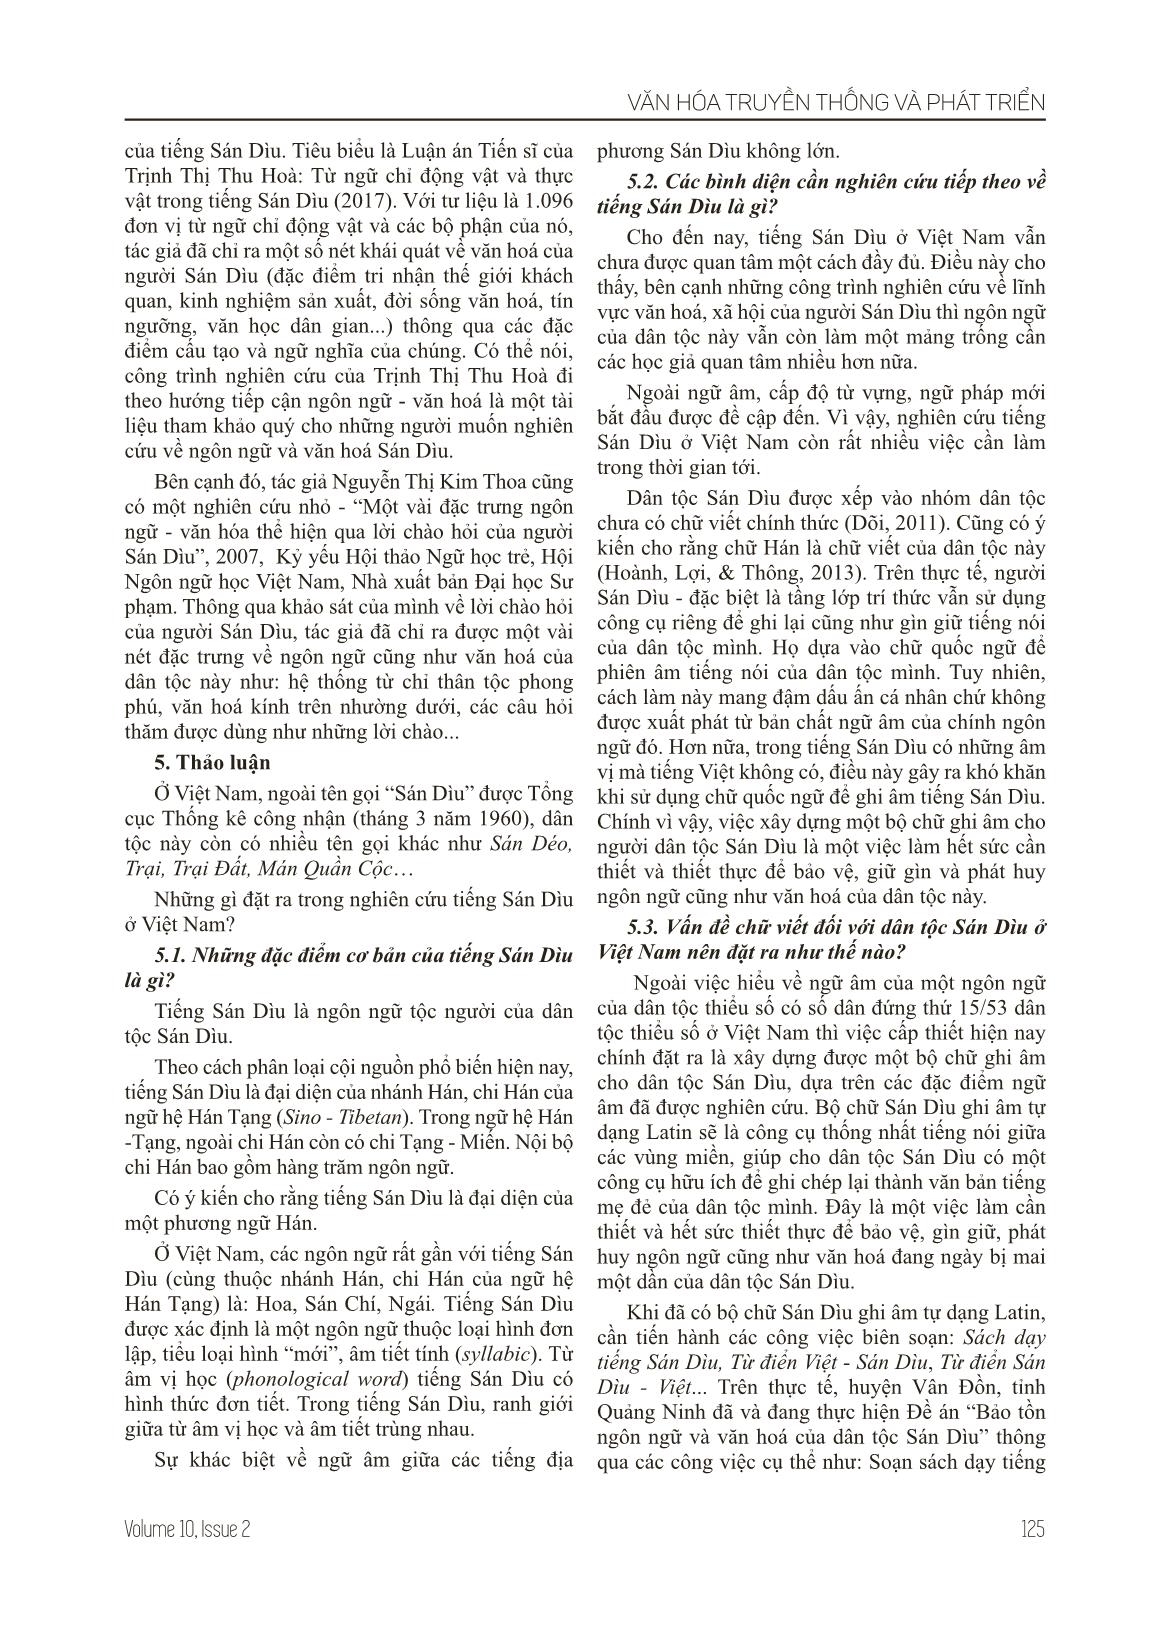 Những vấn đề đặt ra trong nghiên cứu tiếng Sán Dìu ở Việt Nam hiện nay trang 4